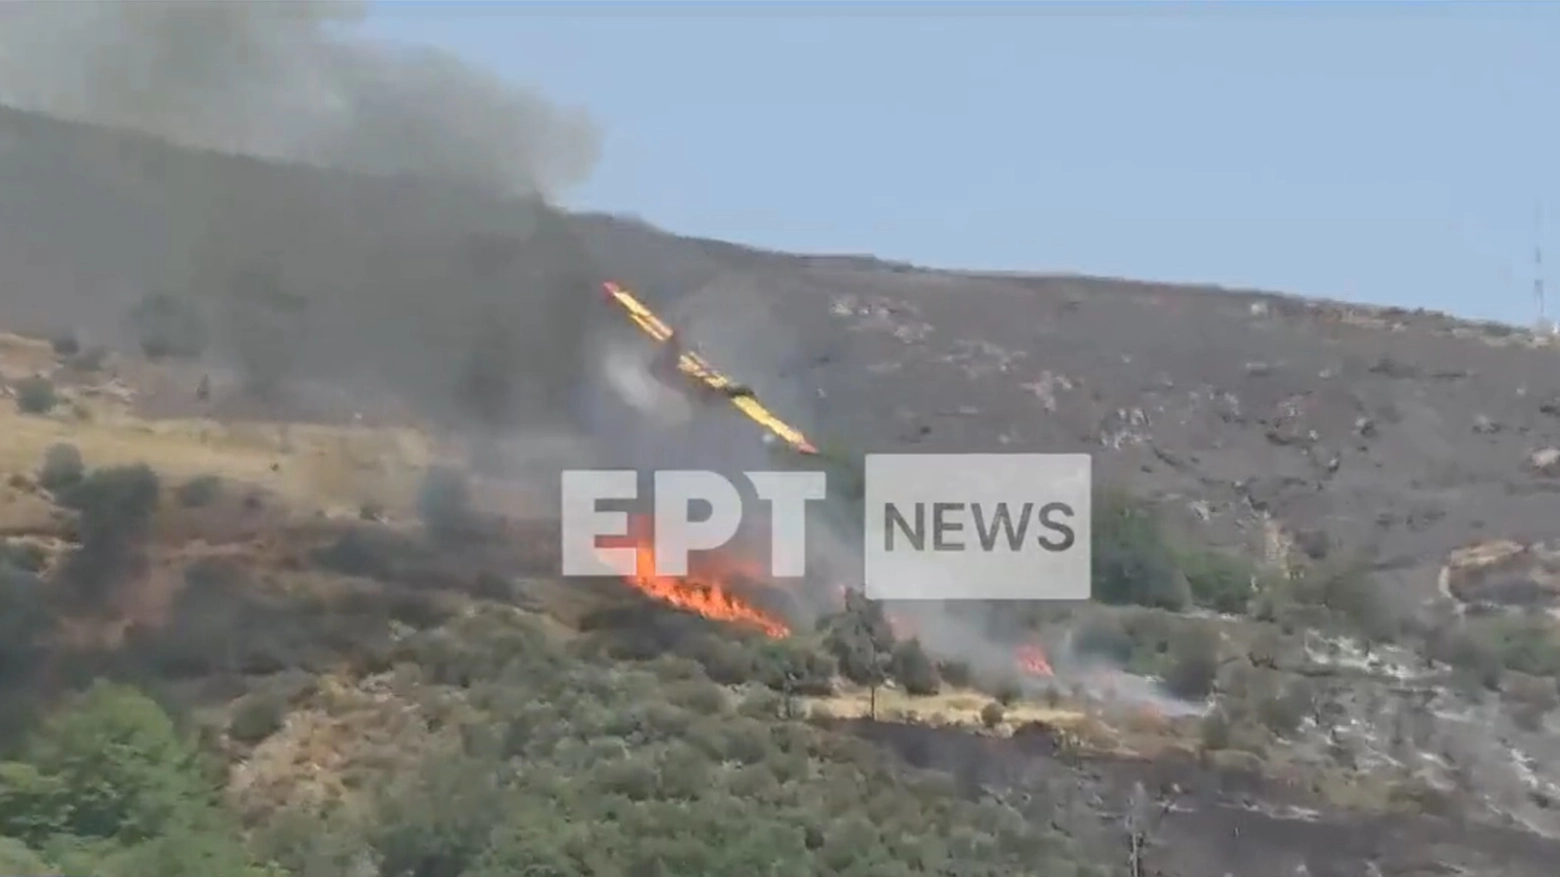 Aerero anti incendio precipita sull'isola di Evia: le immagini della tv pubblica greca